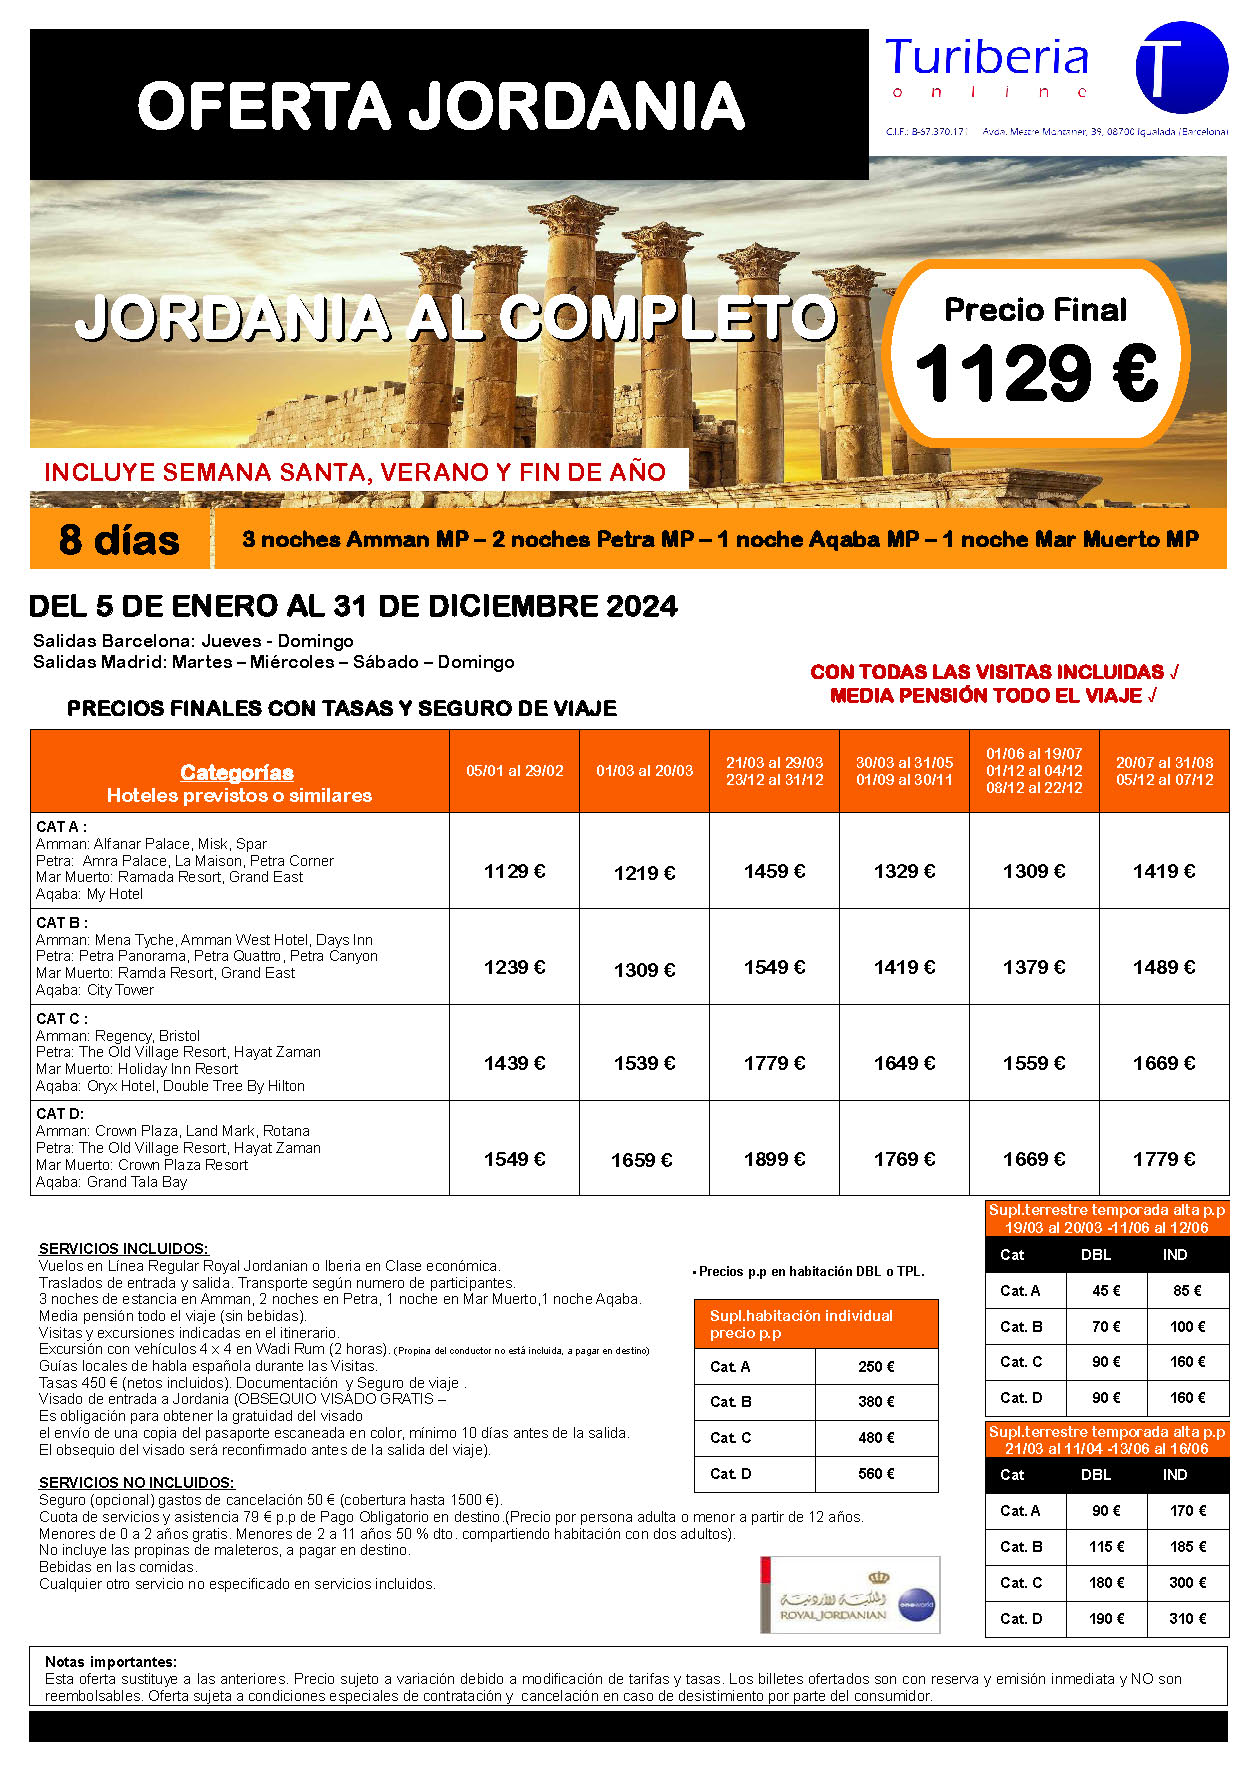 Ofertas Turiberia Jordania 2024 circuito Jordania al Completo 8 dias salida en vuelo directo desde Barcelona y Madrid